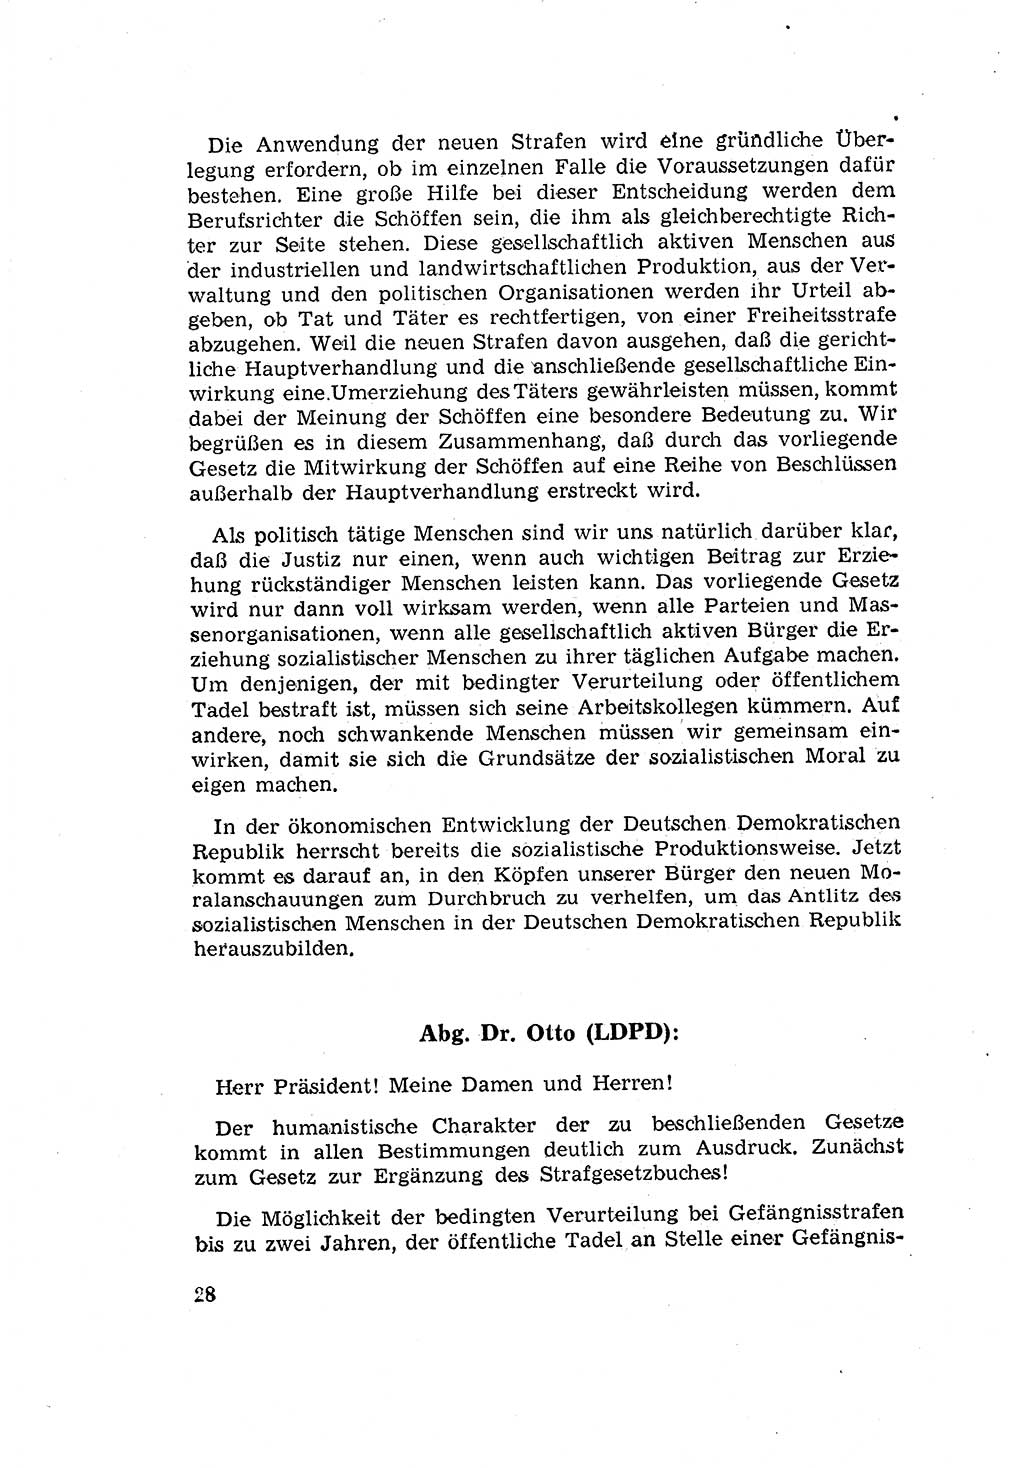 Zum Erlaß des Gesetzes zur Ergänzung des Strafgesetzbuches (StGB), Strafergänzungsgesetz (StEG) [Deutsche Demokratische Republik (DDR)] 1957, Seite 28 (StGB StEG DDR 1957, S. 28)